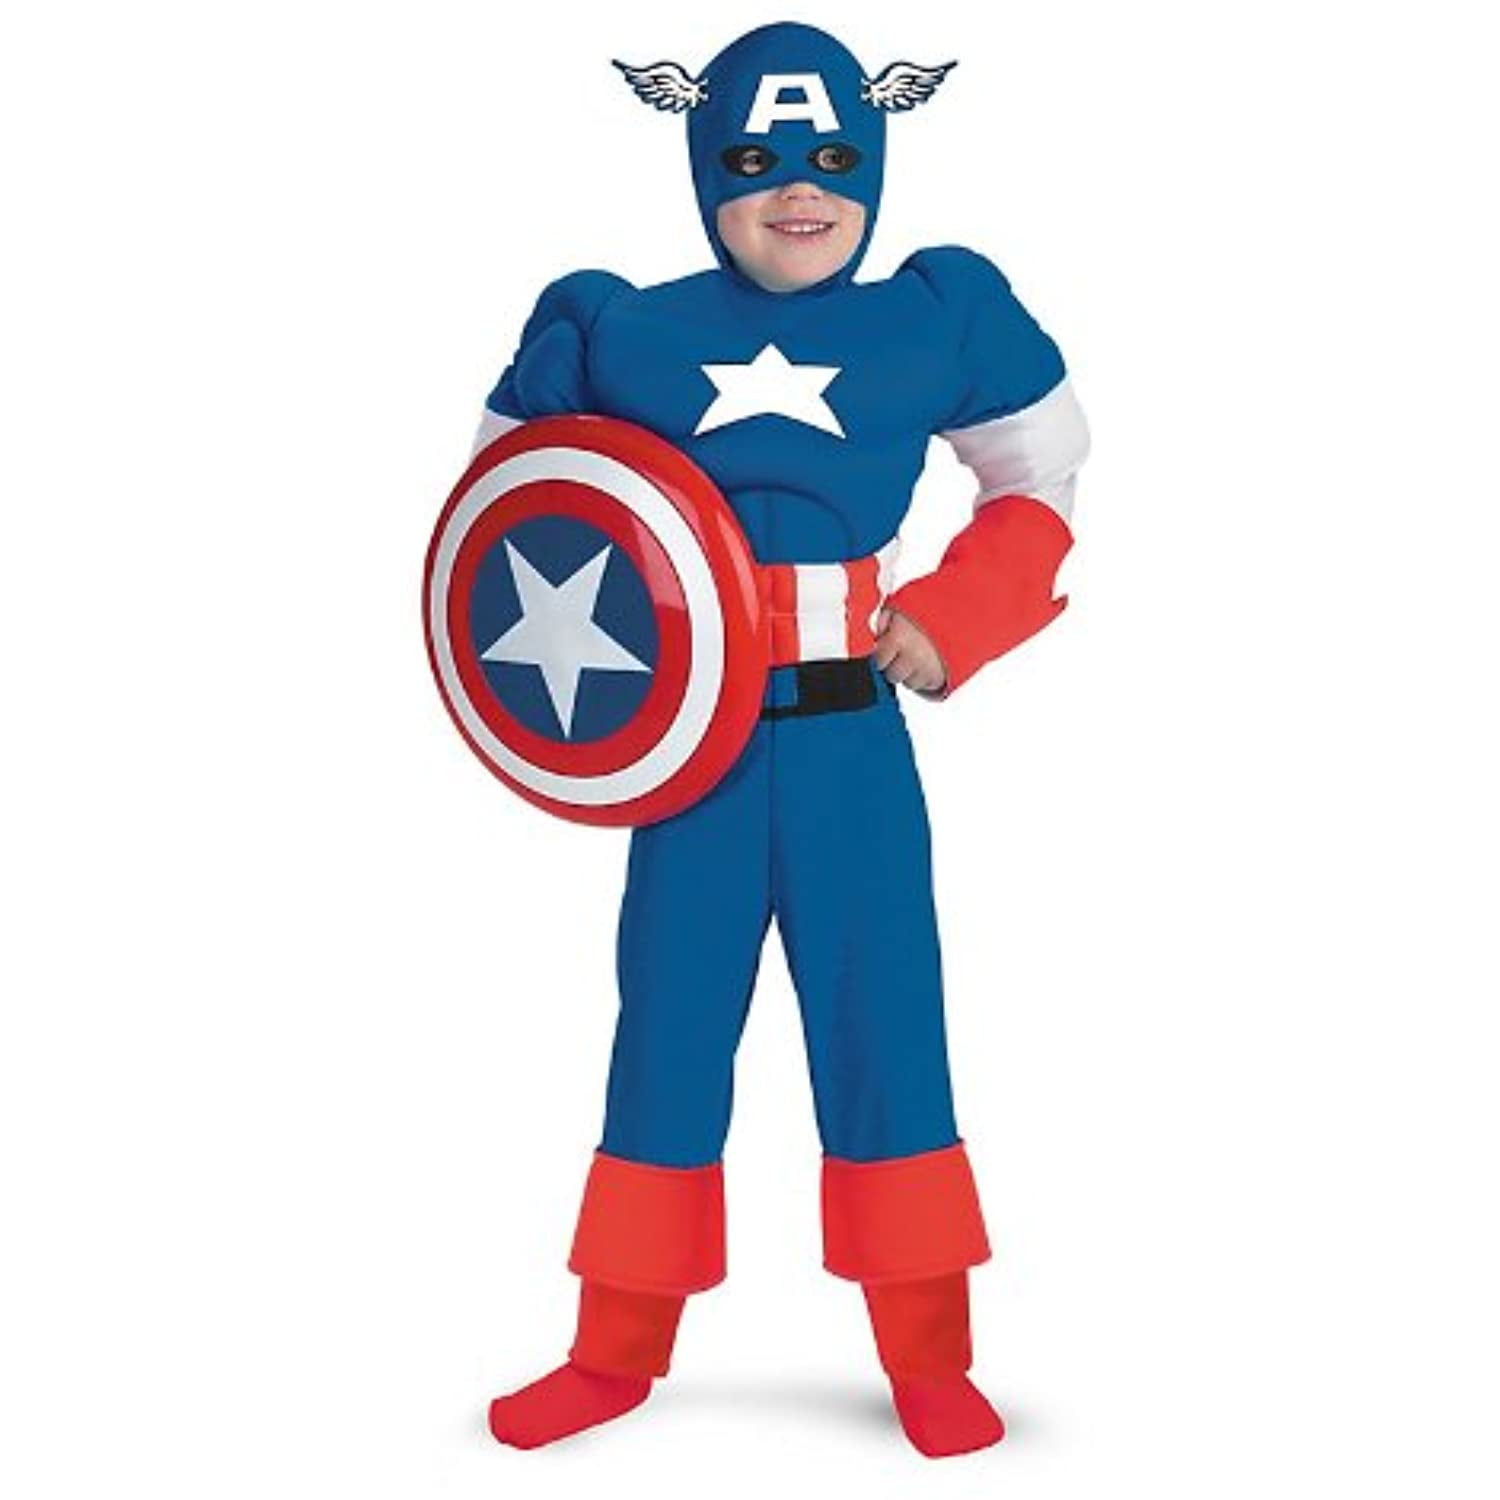 Disney Store Falcon Costume for Kids Civil War ~ Size 3 Captain America 